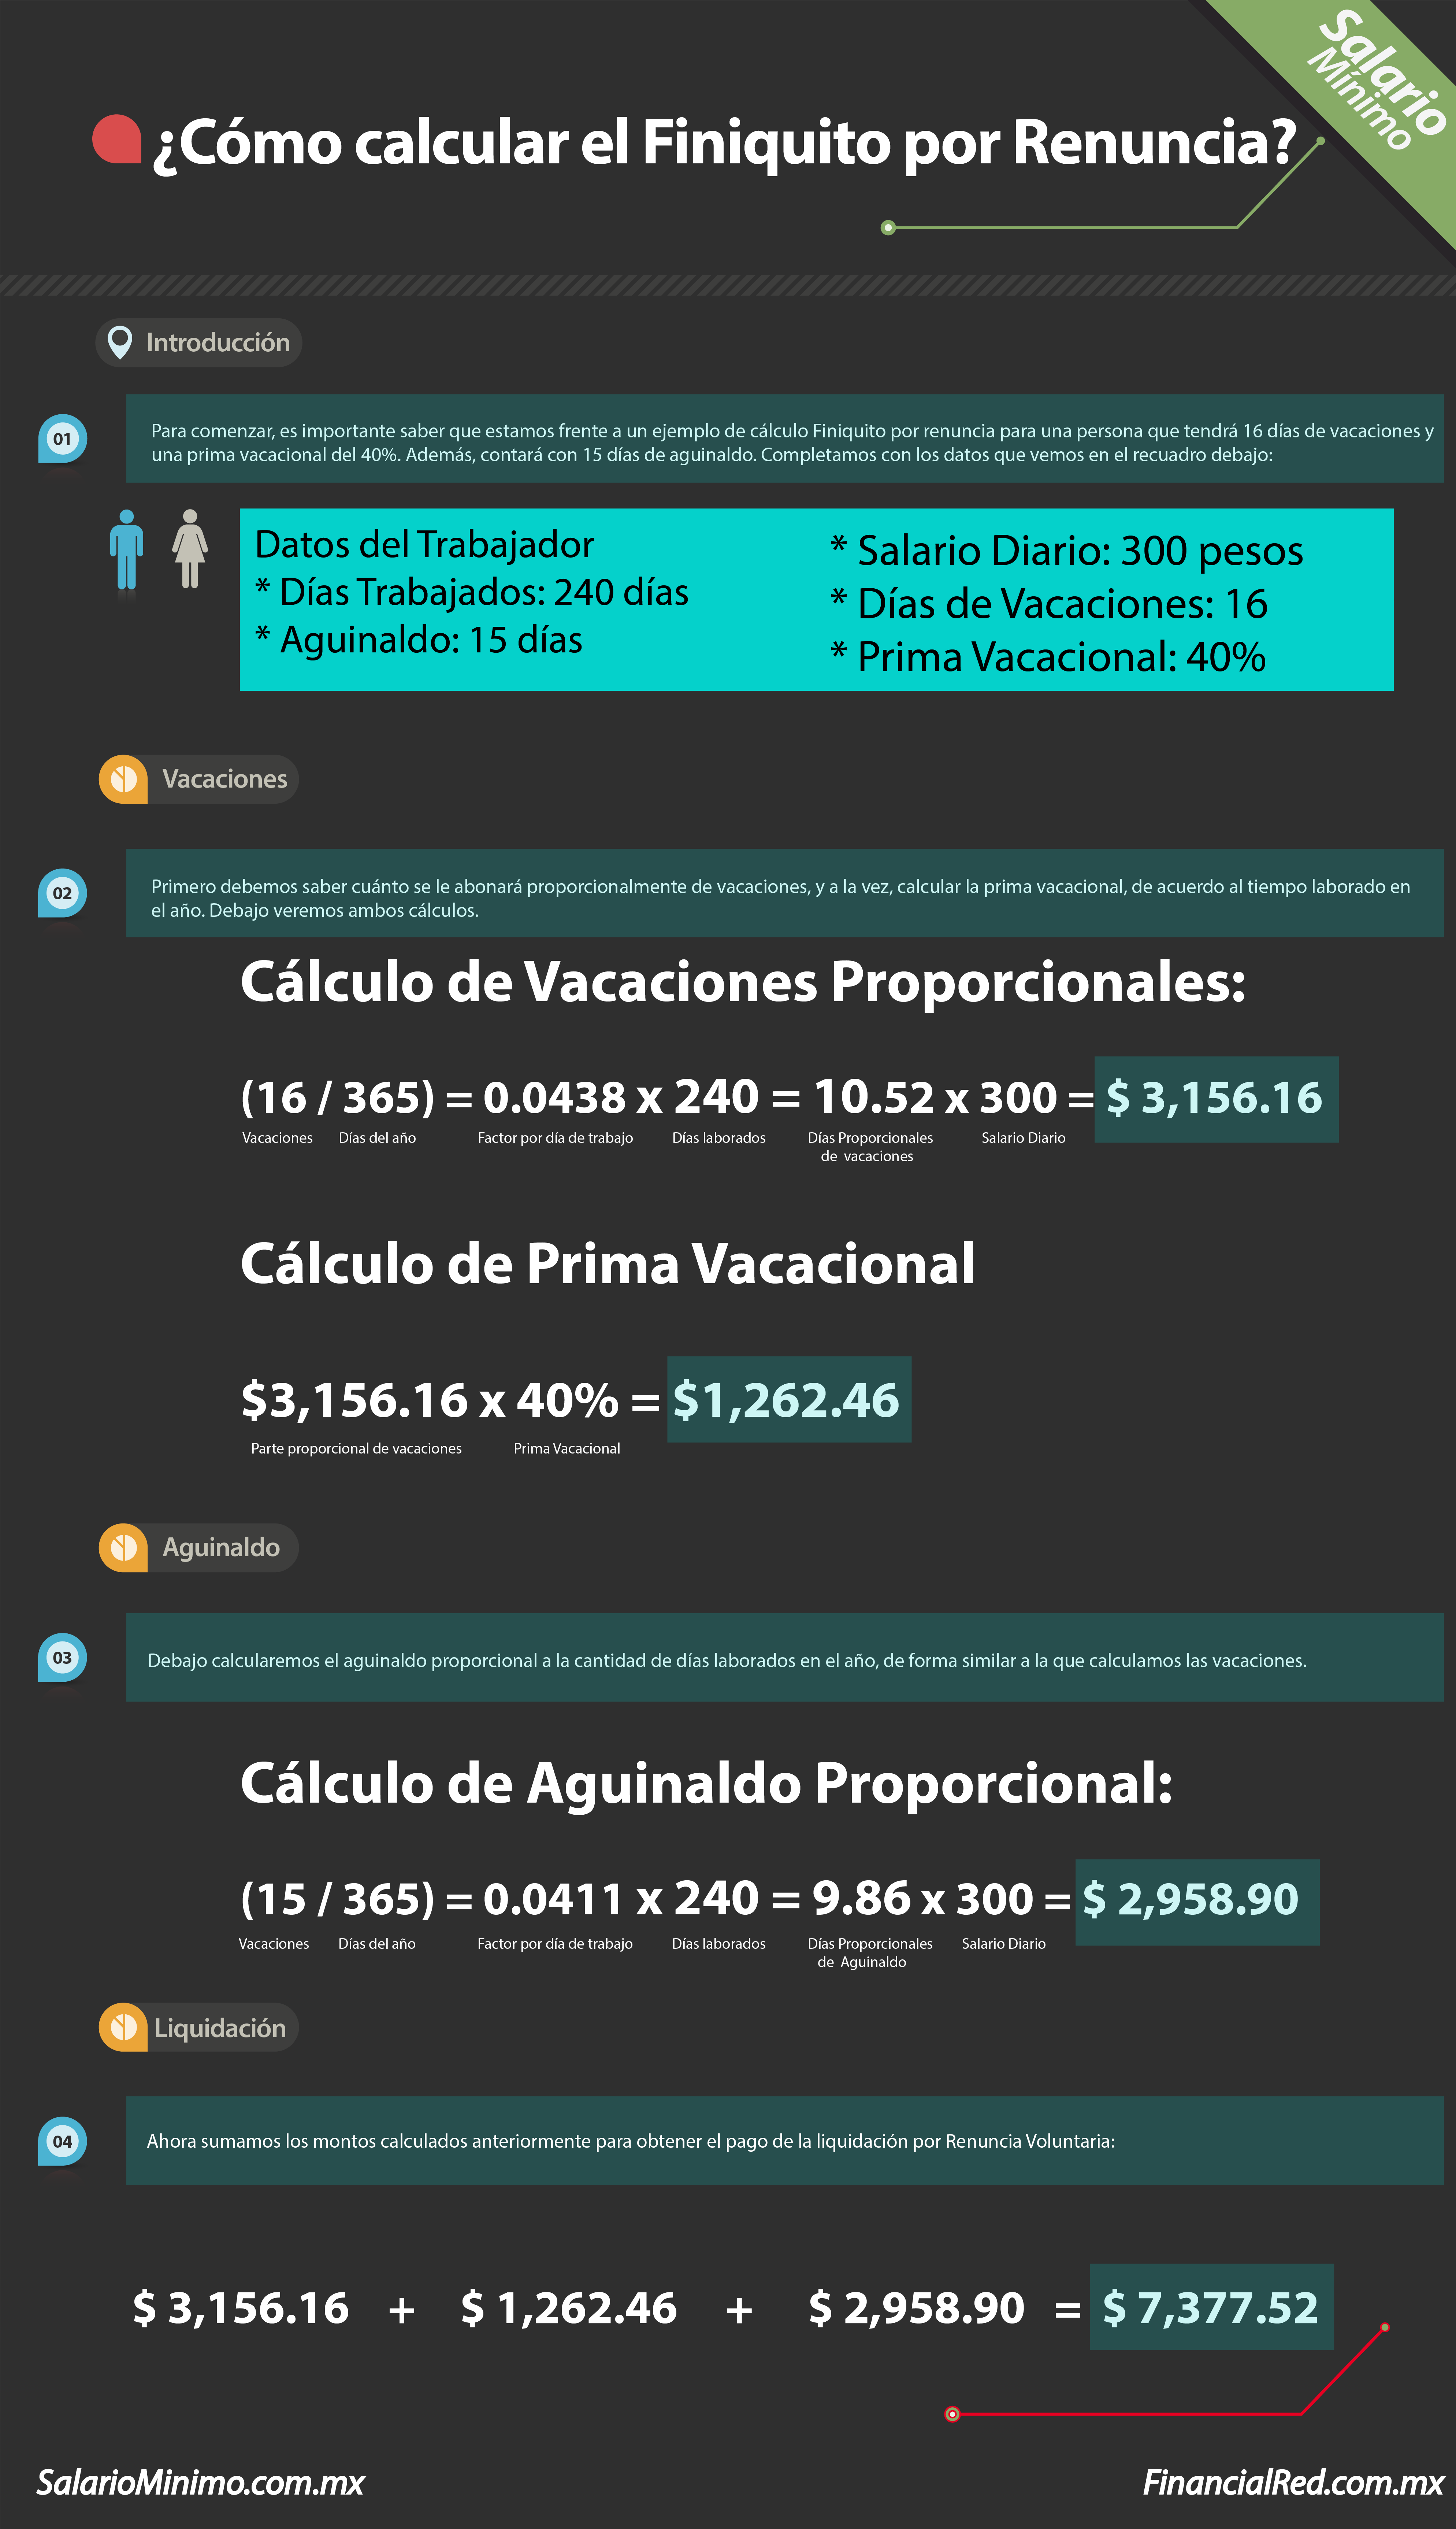 Problema autor Grupo Cálculo de finiquito - SalarioMinimo.com.mx